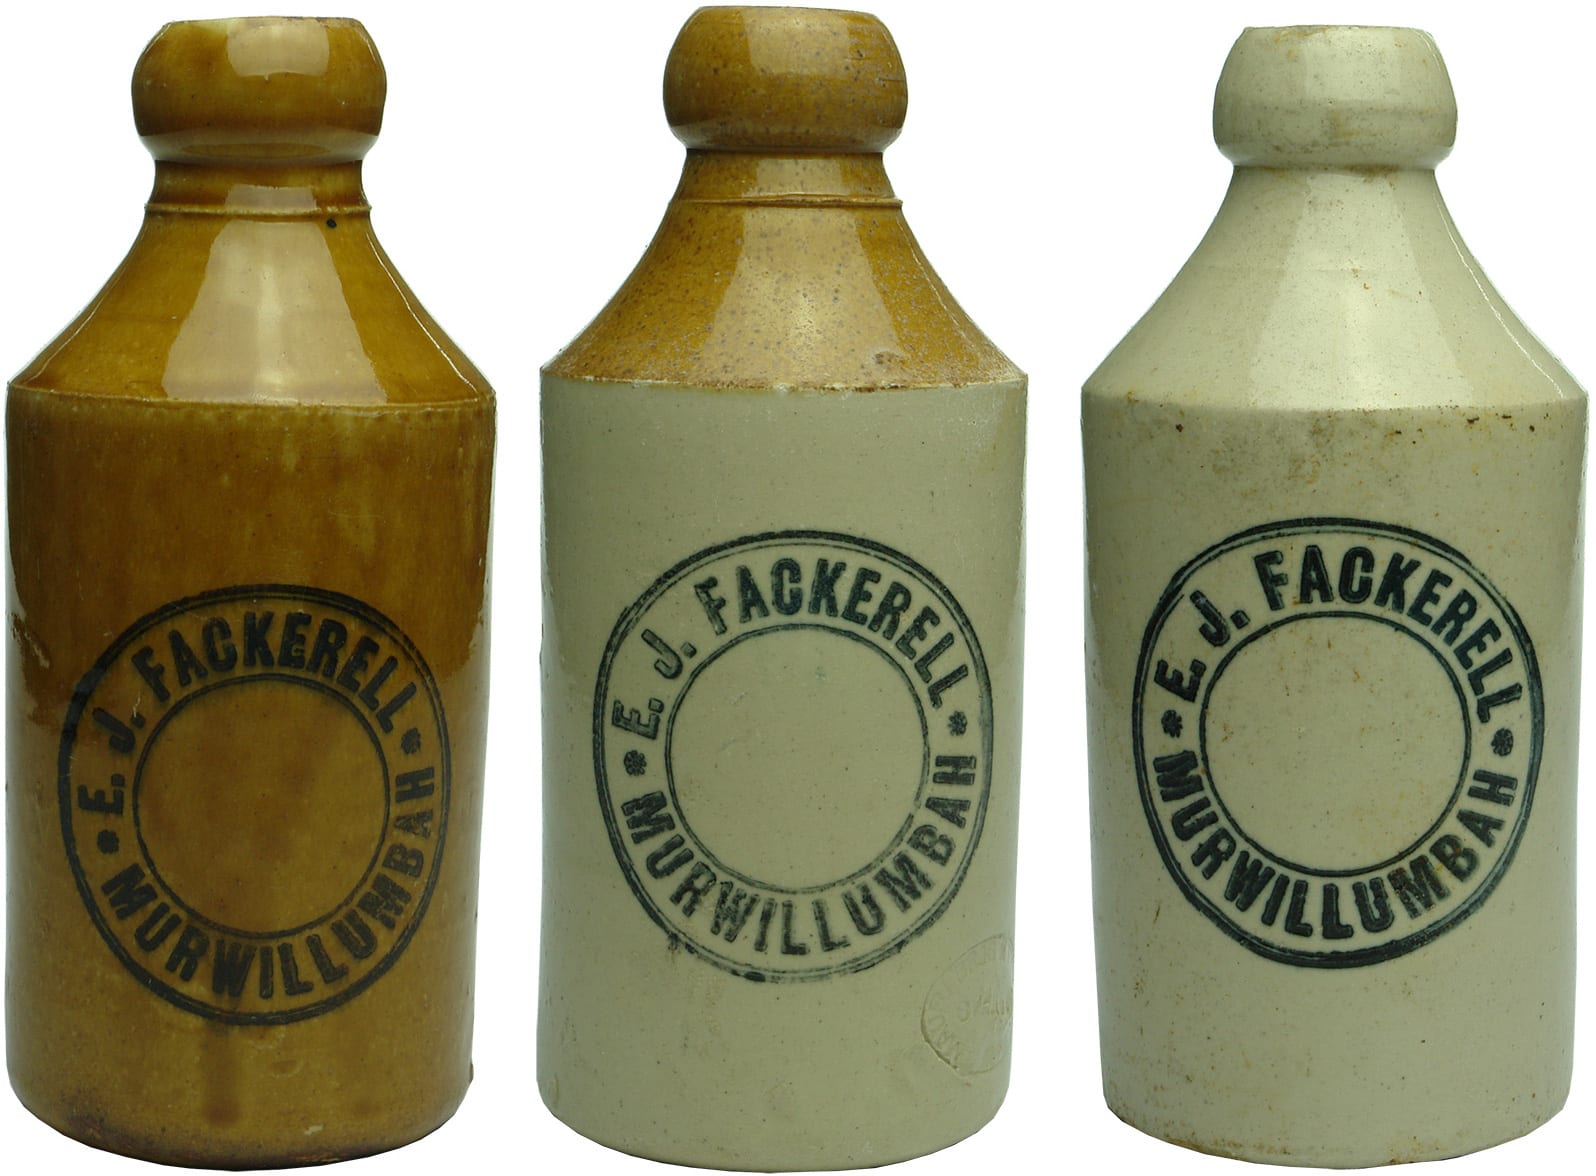 Fackerell Murwillumbah Old Ginger Beer Bottles